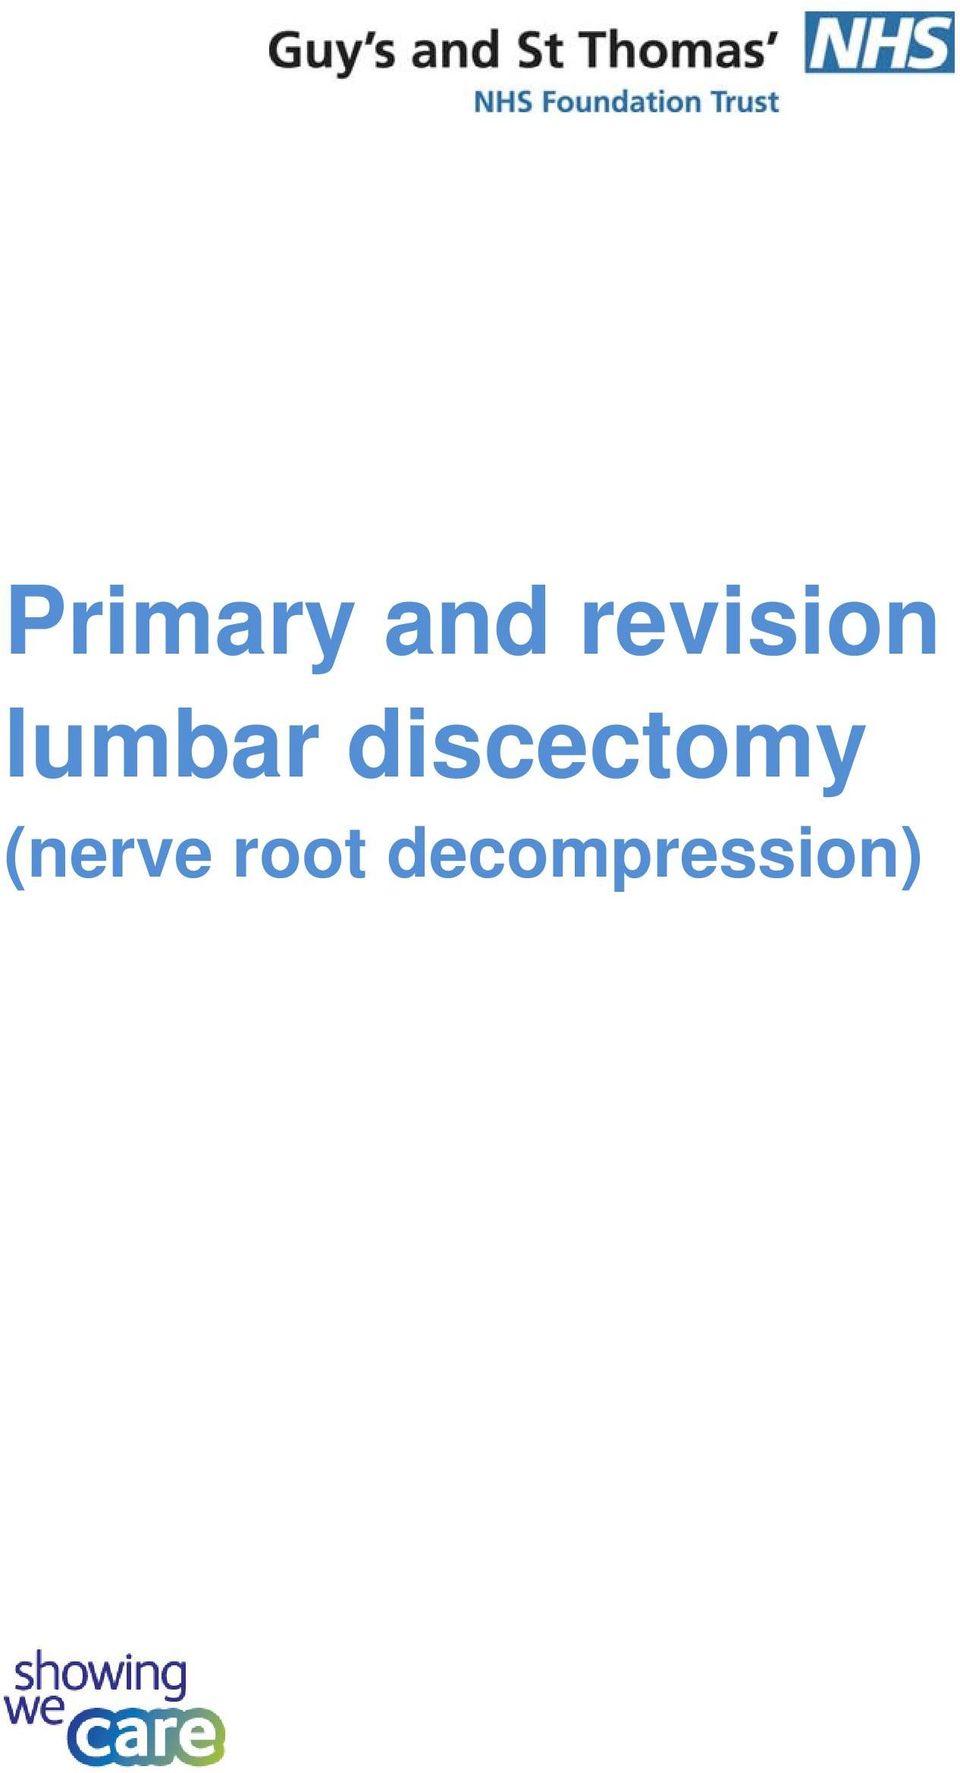 discectomy